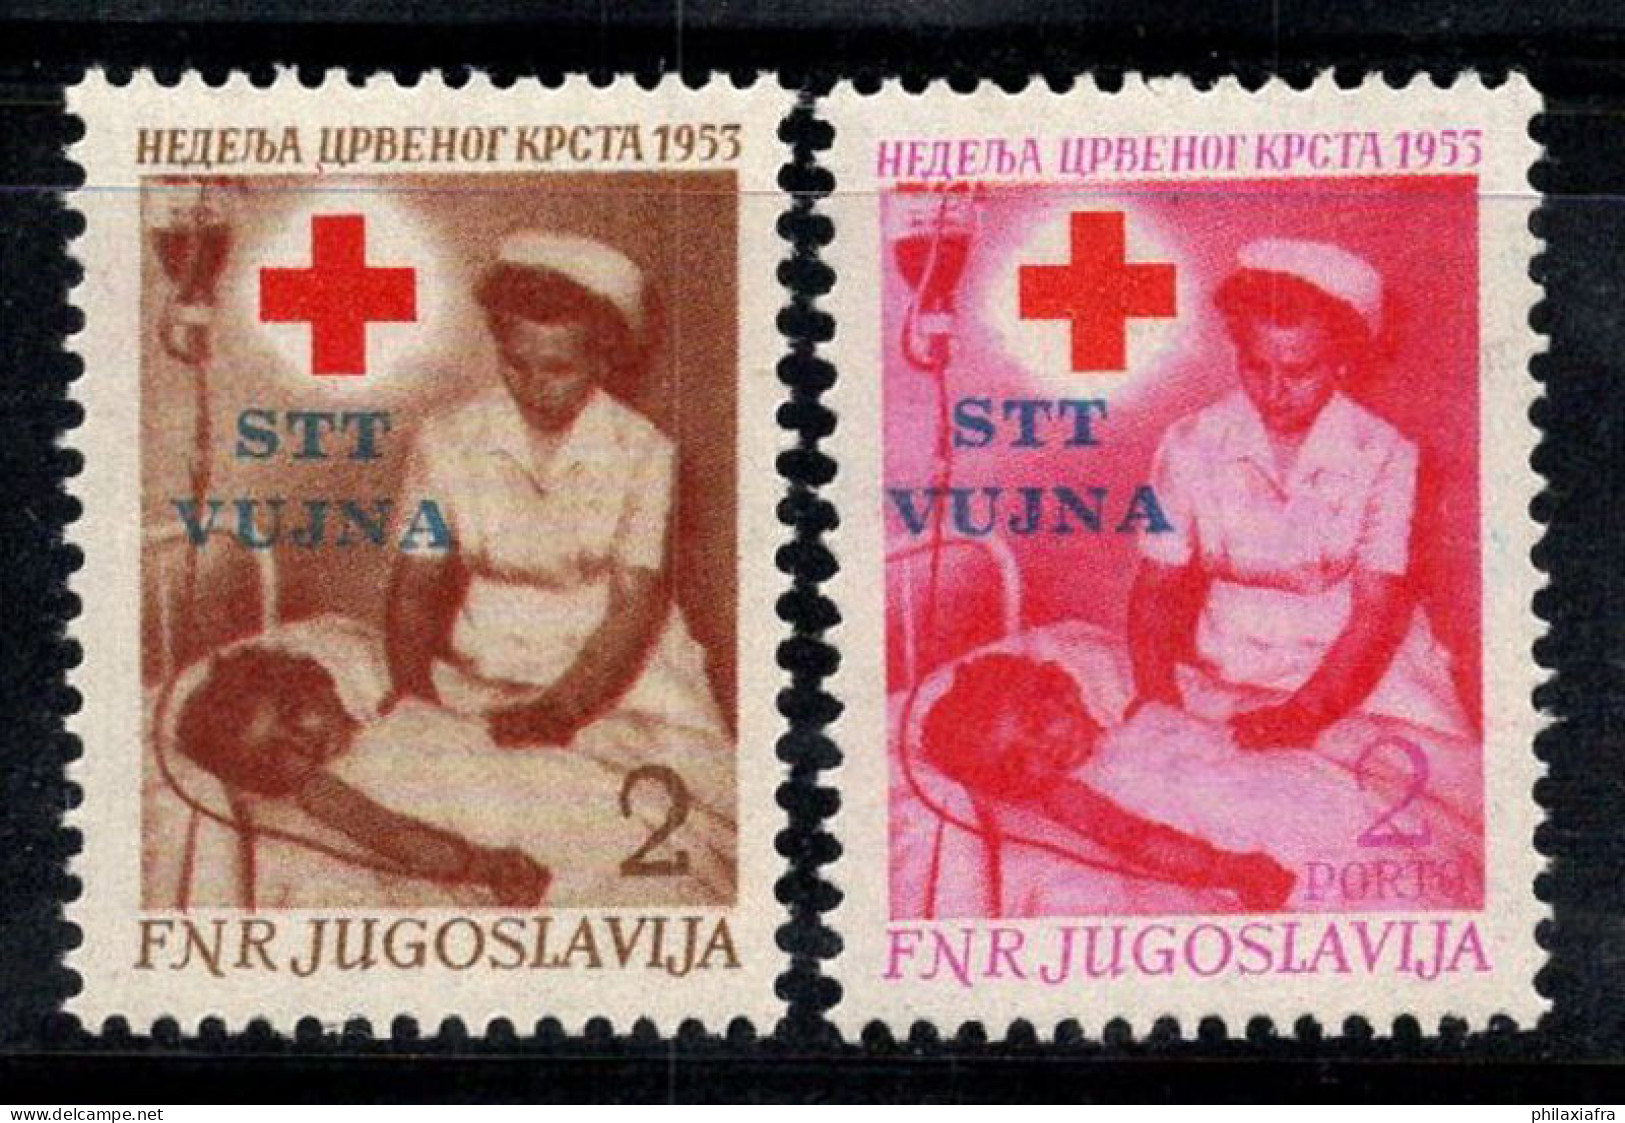 Trieste B 1953 Sass. 93-94 Neuf ** 100% Surimprimé Croix-Rouge,Infirmière - Neufs